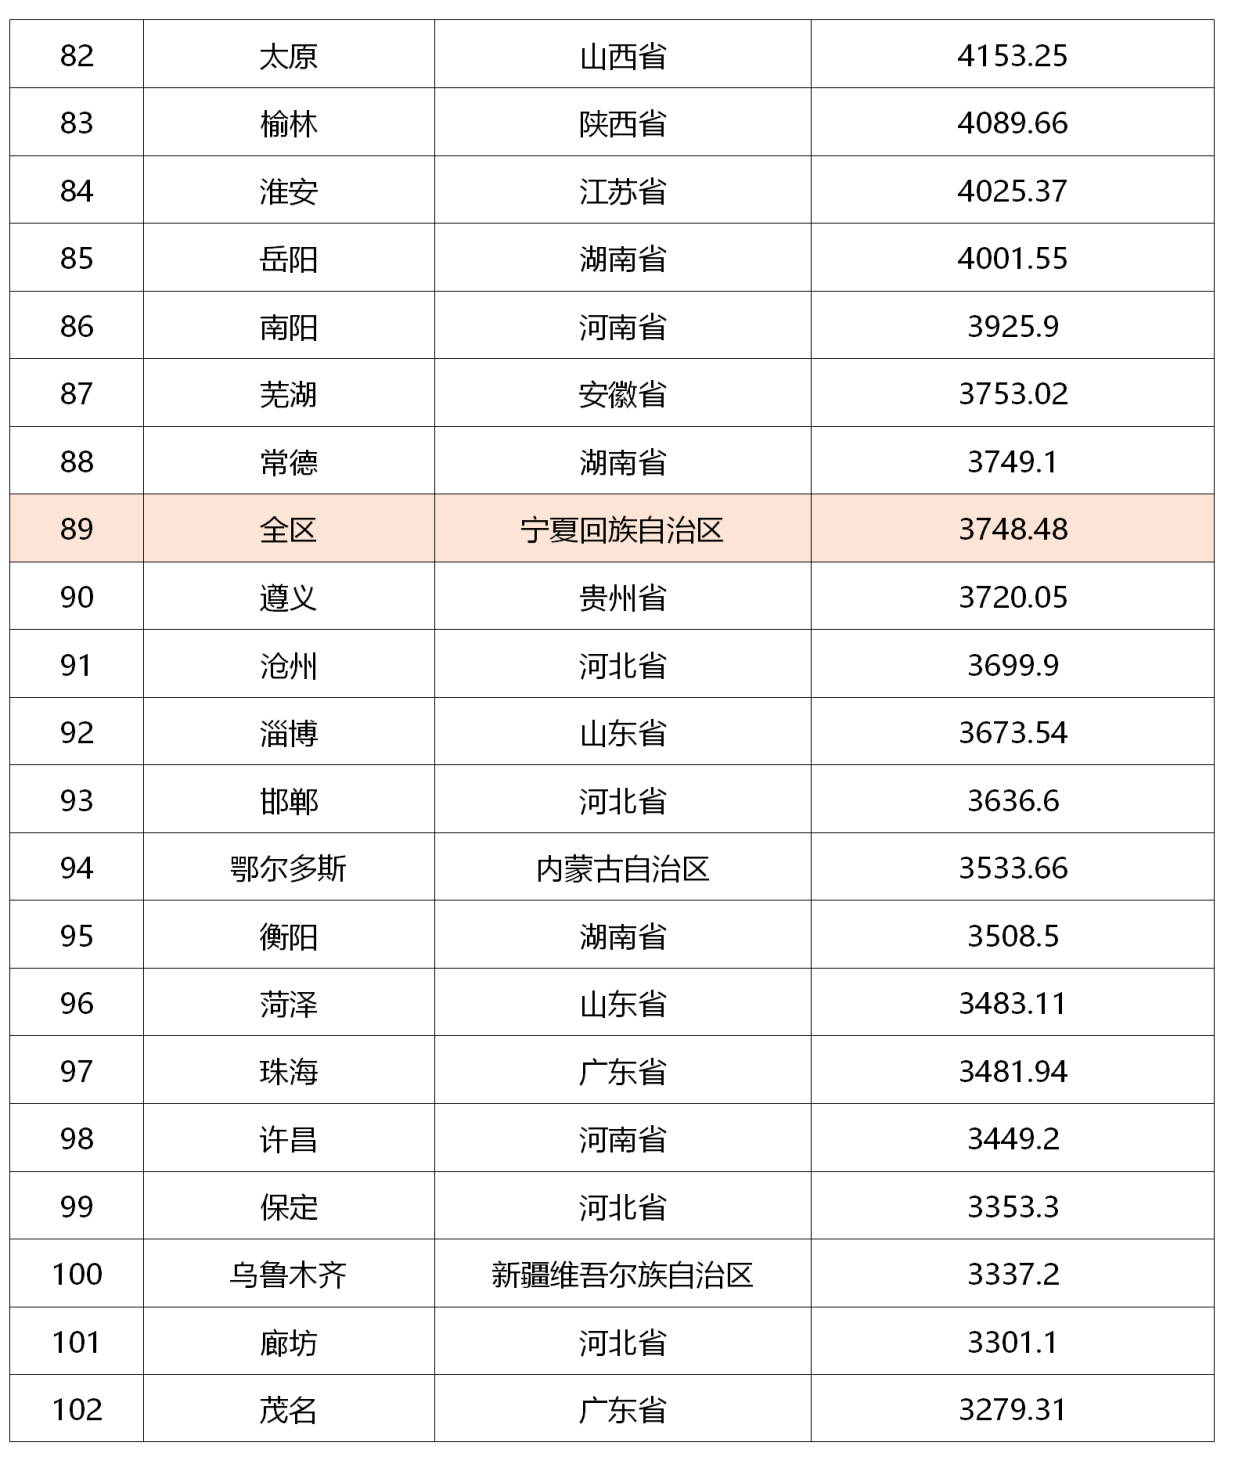 2020年贵州省gdp总量排名_2020年各省市区GDP排名 新